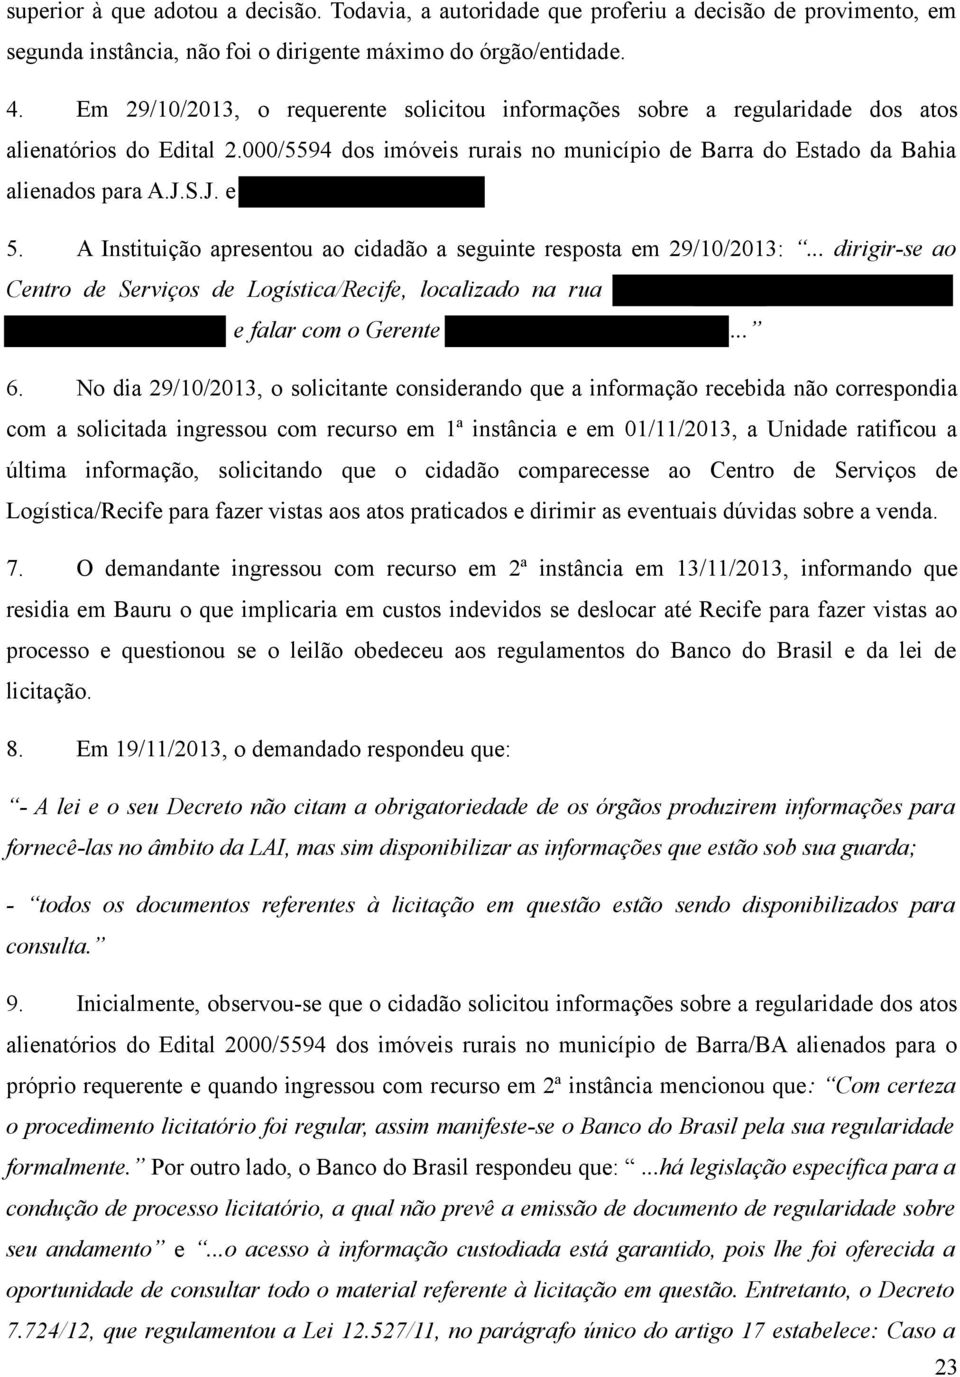 A Instituição apresentou ao cidadão a seguinte resposta em 29/10/2013:... dirigir-se ao Centro de Serviços de Logística/Recife, localizado na rua e falar com o Gerente... 6.